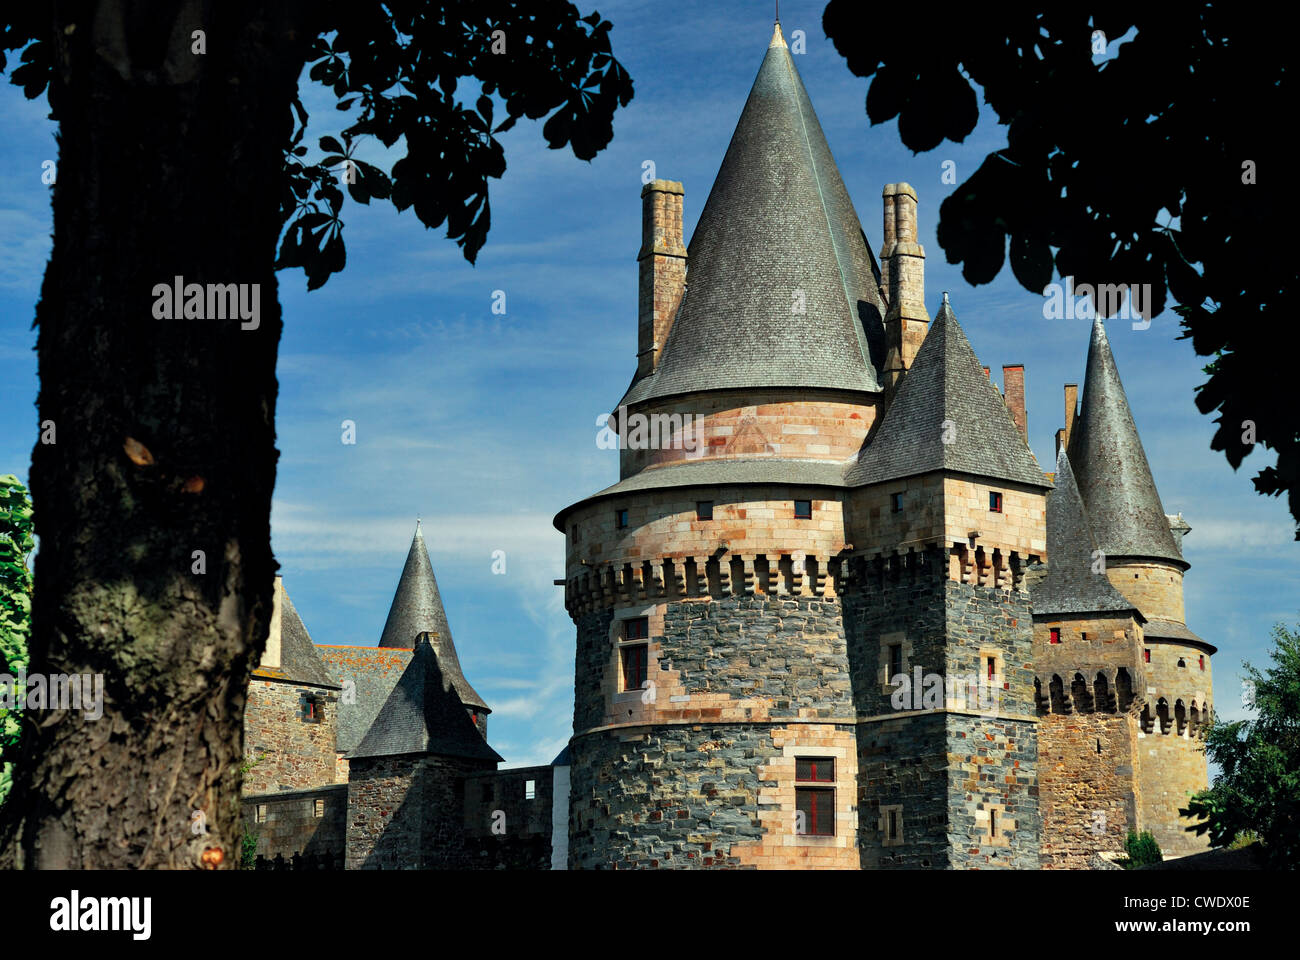 France, Brittany: Chateau de Vitré Stock Photo